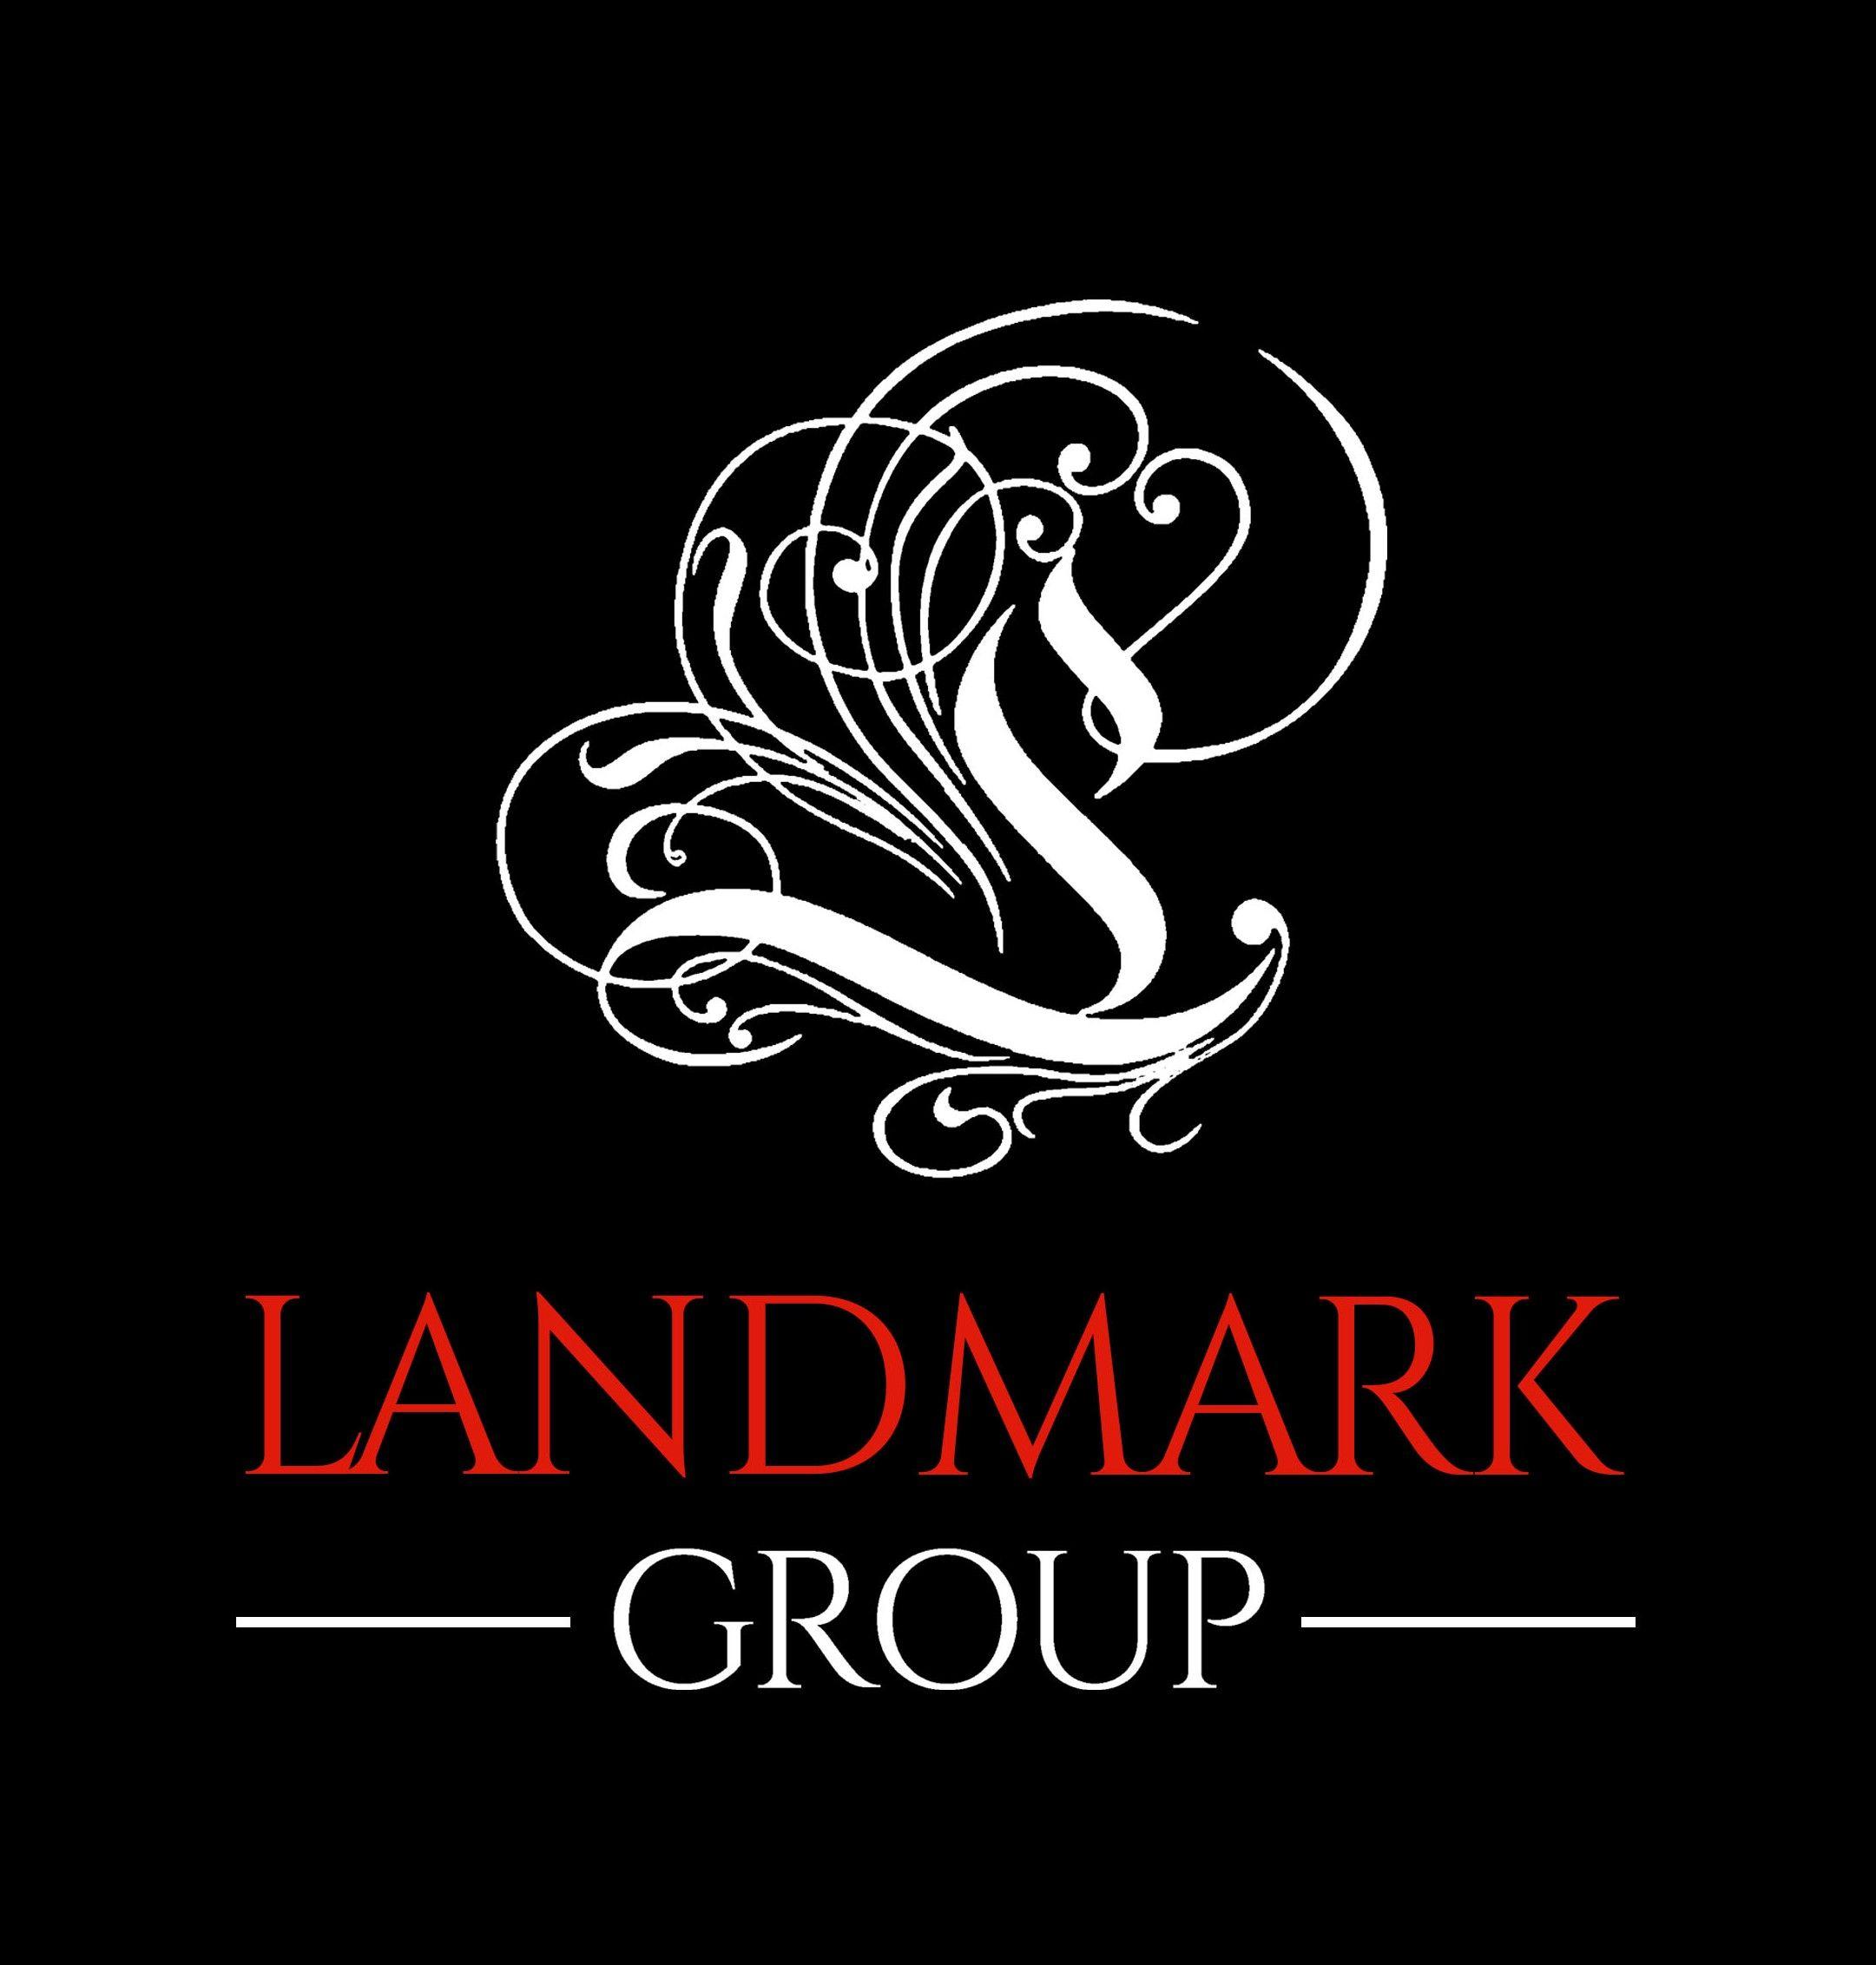 Google White Logo - White logo - Landmark Group